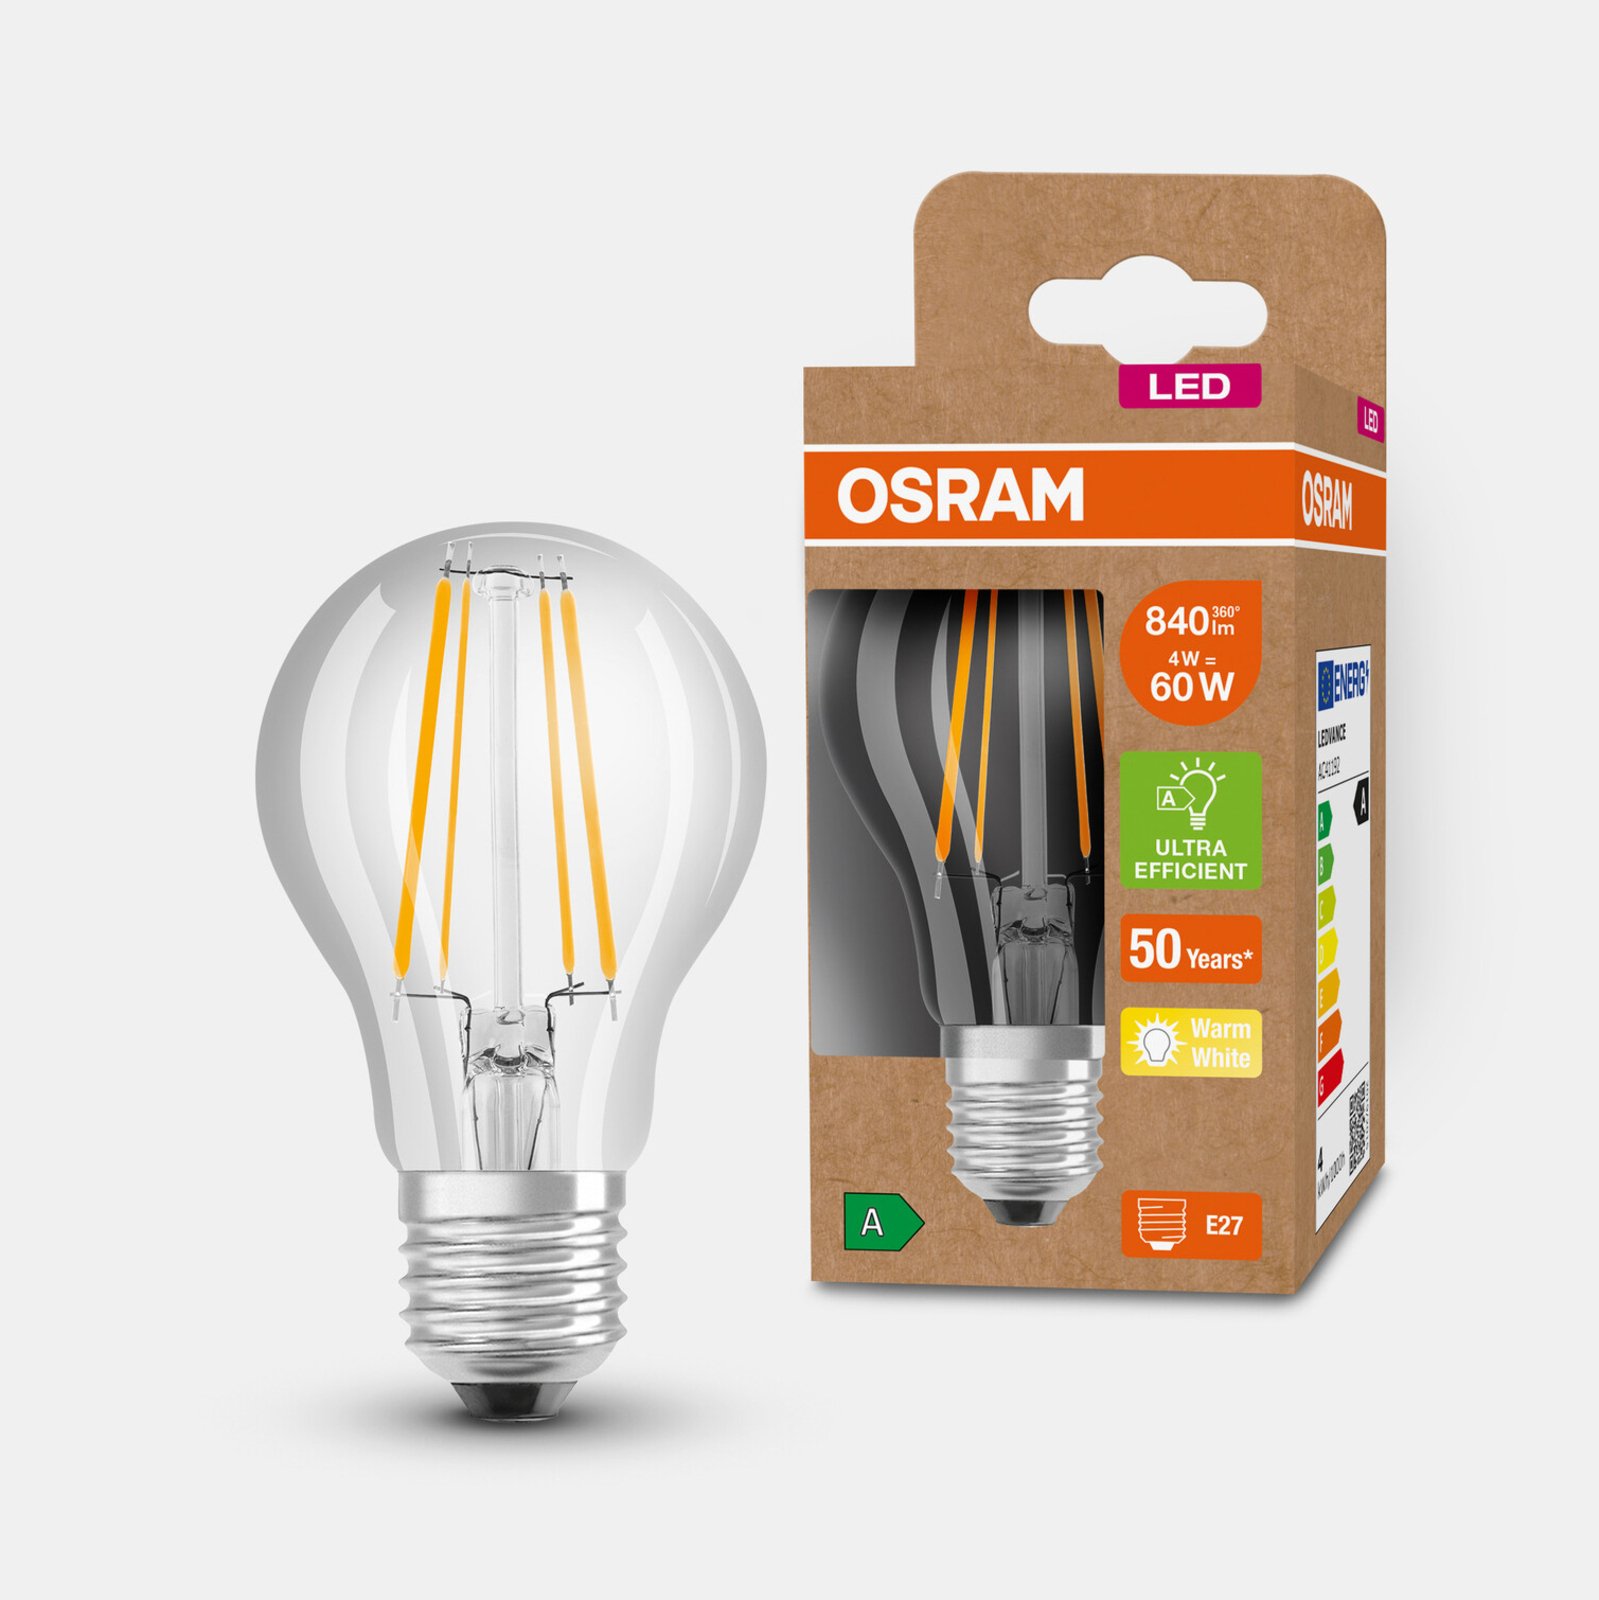 OSRAM Lampă cu LED-uri E27 A60 4W 840lm 3.000K clar